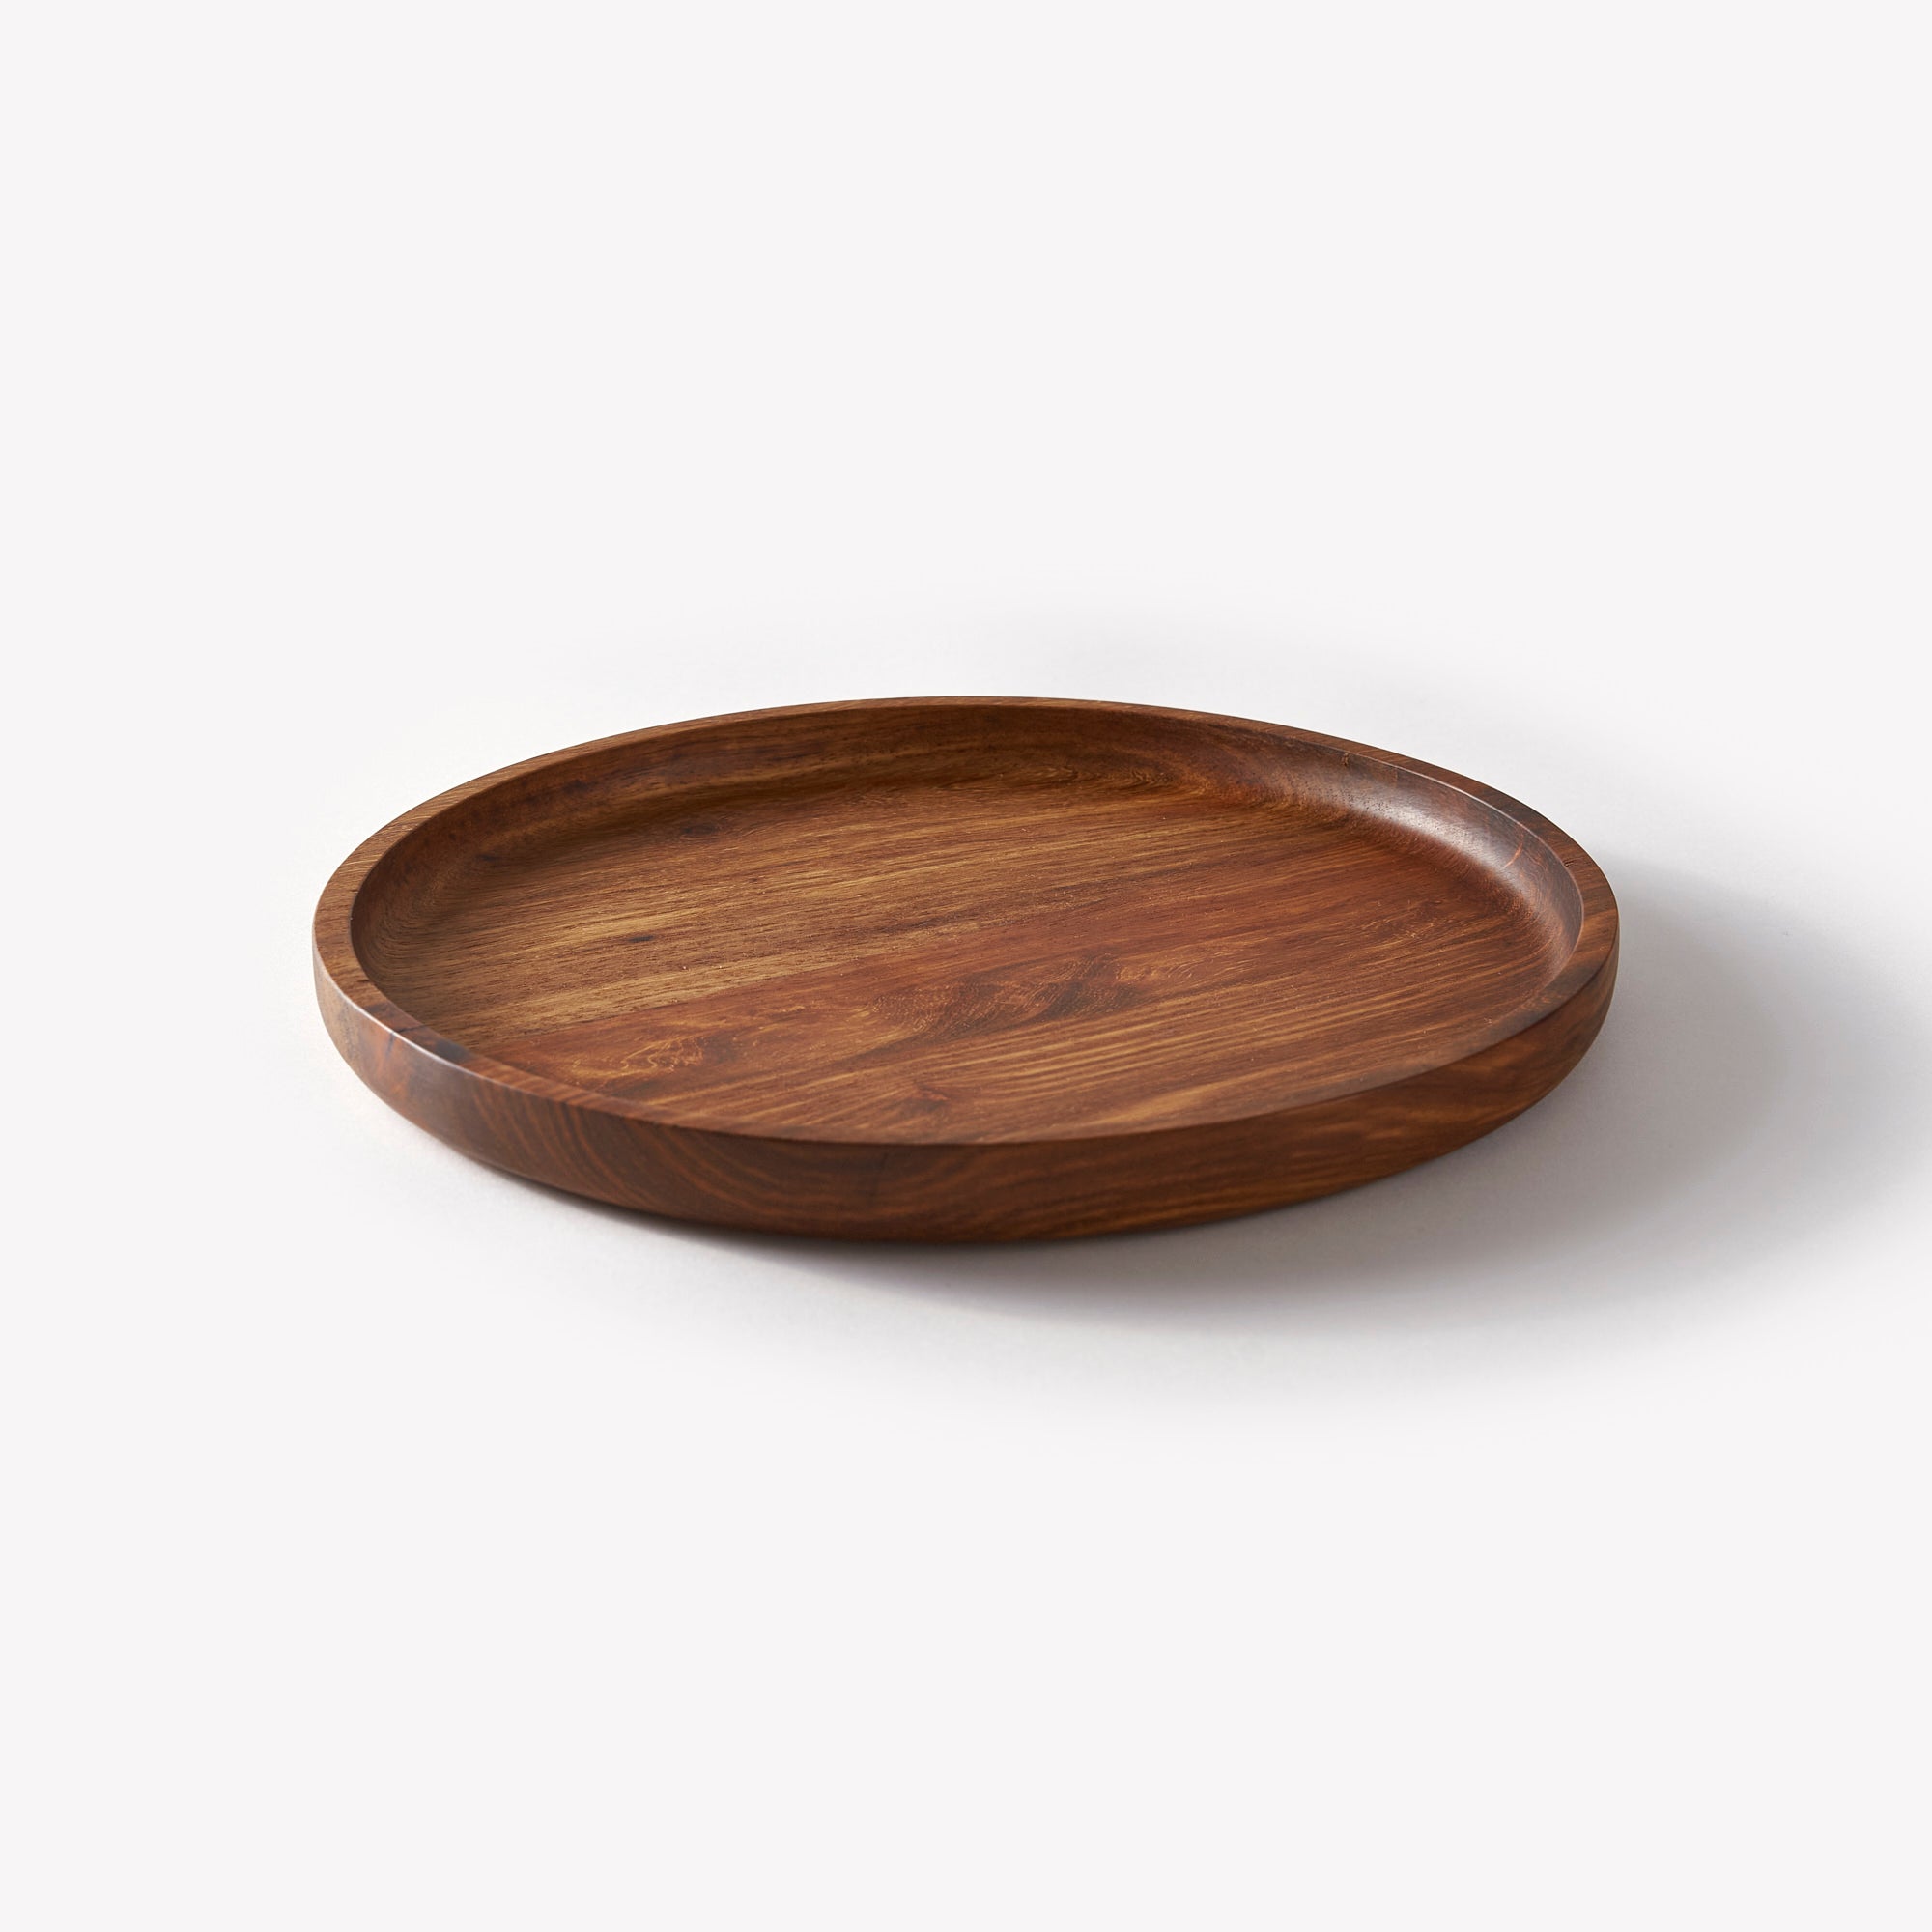 Wooden Plates - ARK Workshop